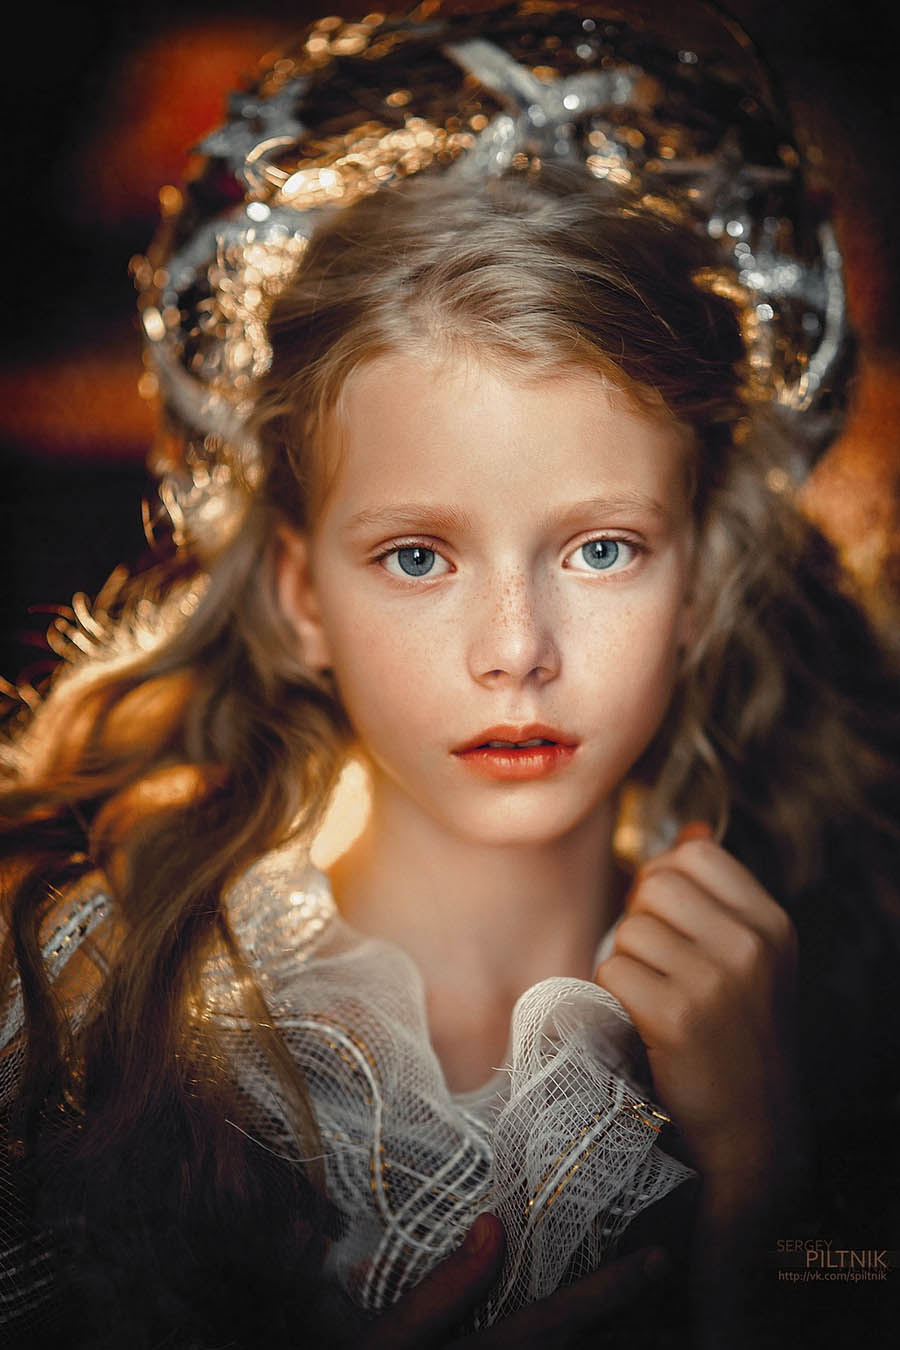 白俄罗斯摄影师Sergey Piltnik儿童人像肖像、少女私房摄影作品欣赏